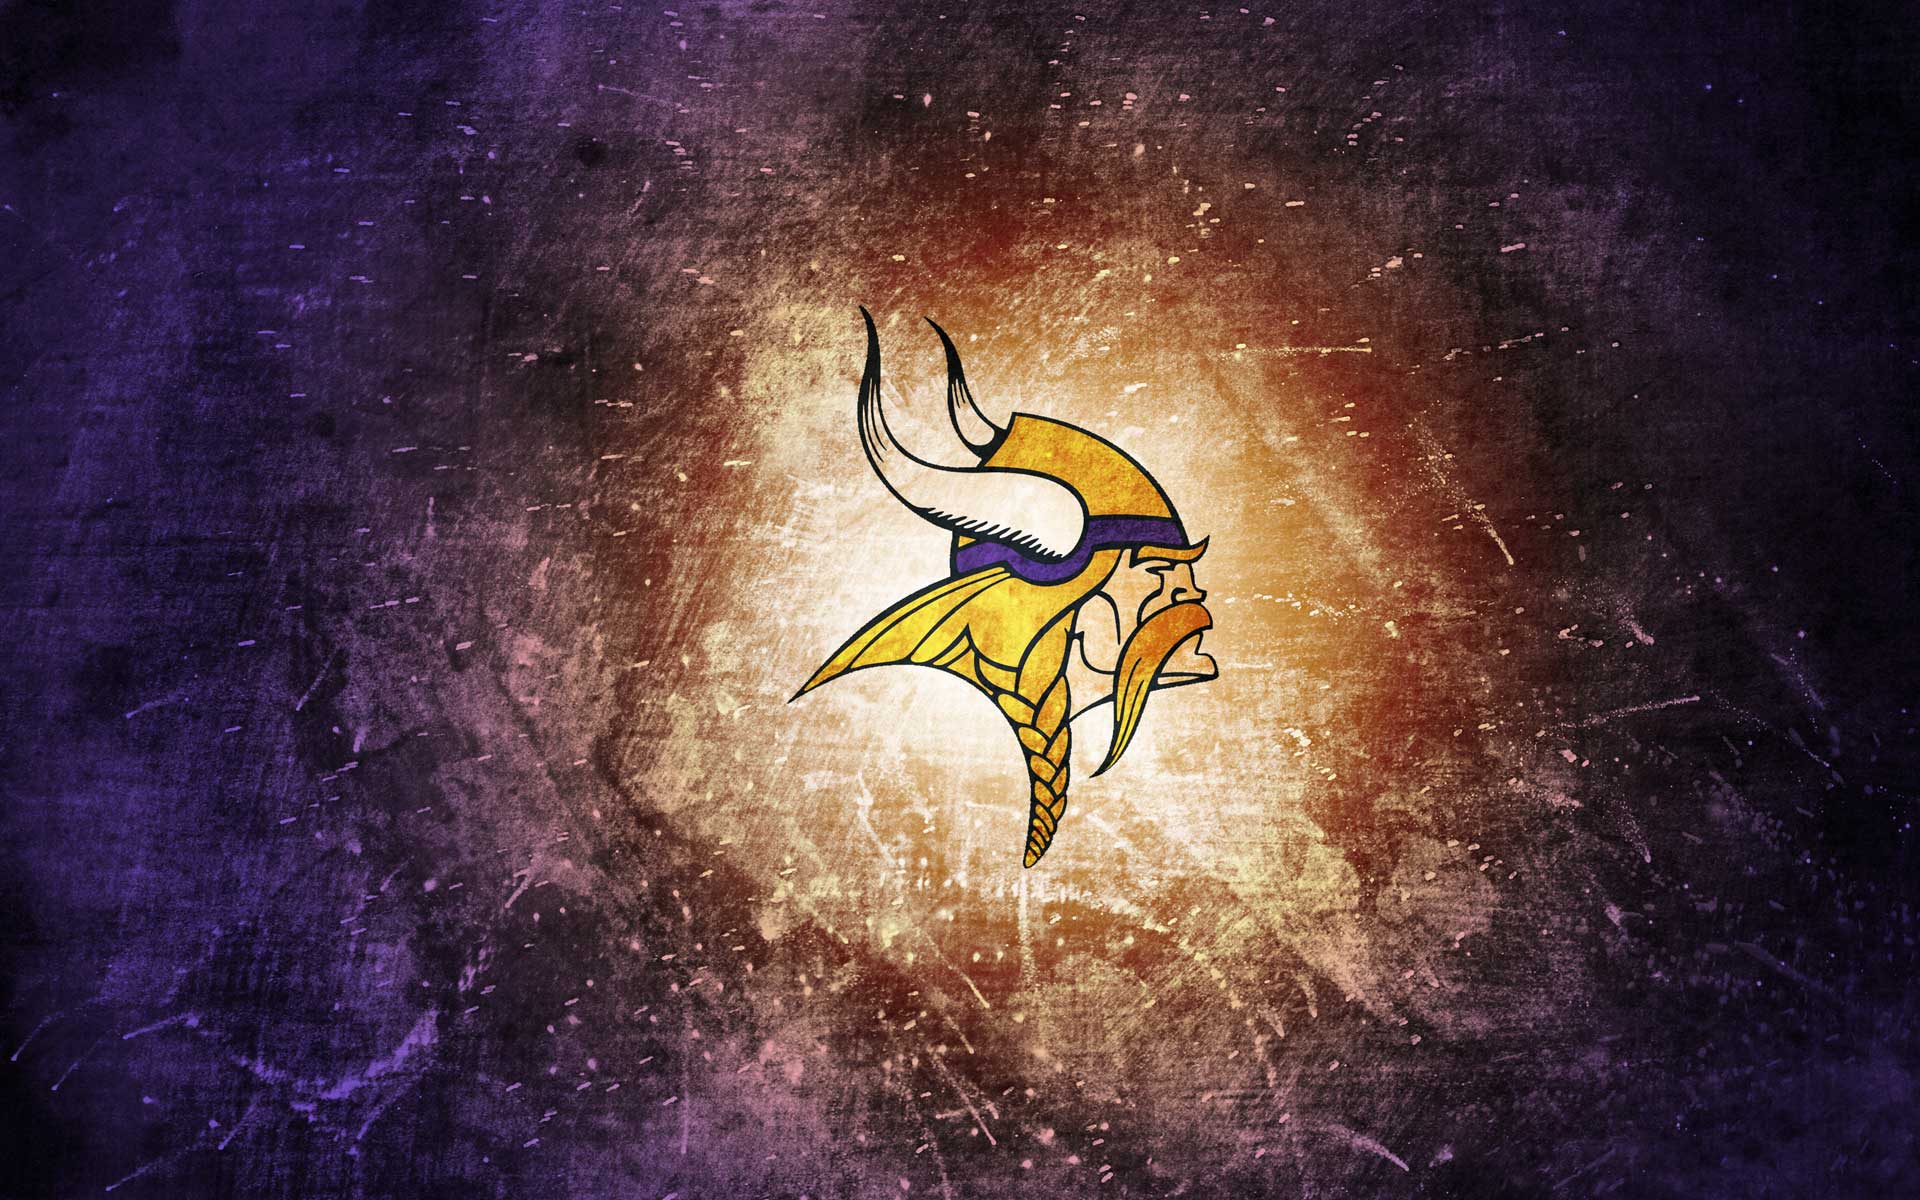 Minnesota Vikings Football Wallpaper là món quà đặc biệt dành cho những fan hâm mộ bóng đá và những người yêu thích Minnesota Vikings. Sự kết hợp giữa màu sắc đặc trưng và những hình ảnh kỷ niệm của đội bóng vượt trội này sẽ khiến trái tim của bạn điên đảo vì hạnh phúc và sự cảm nhận mãnh liệt.